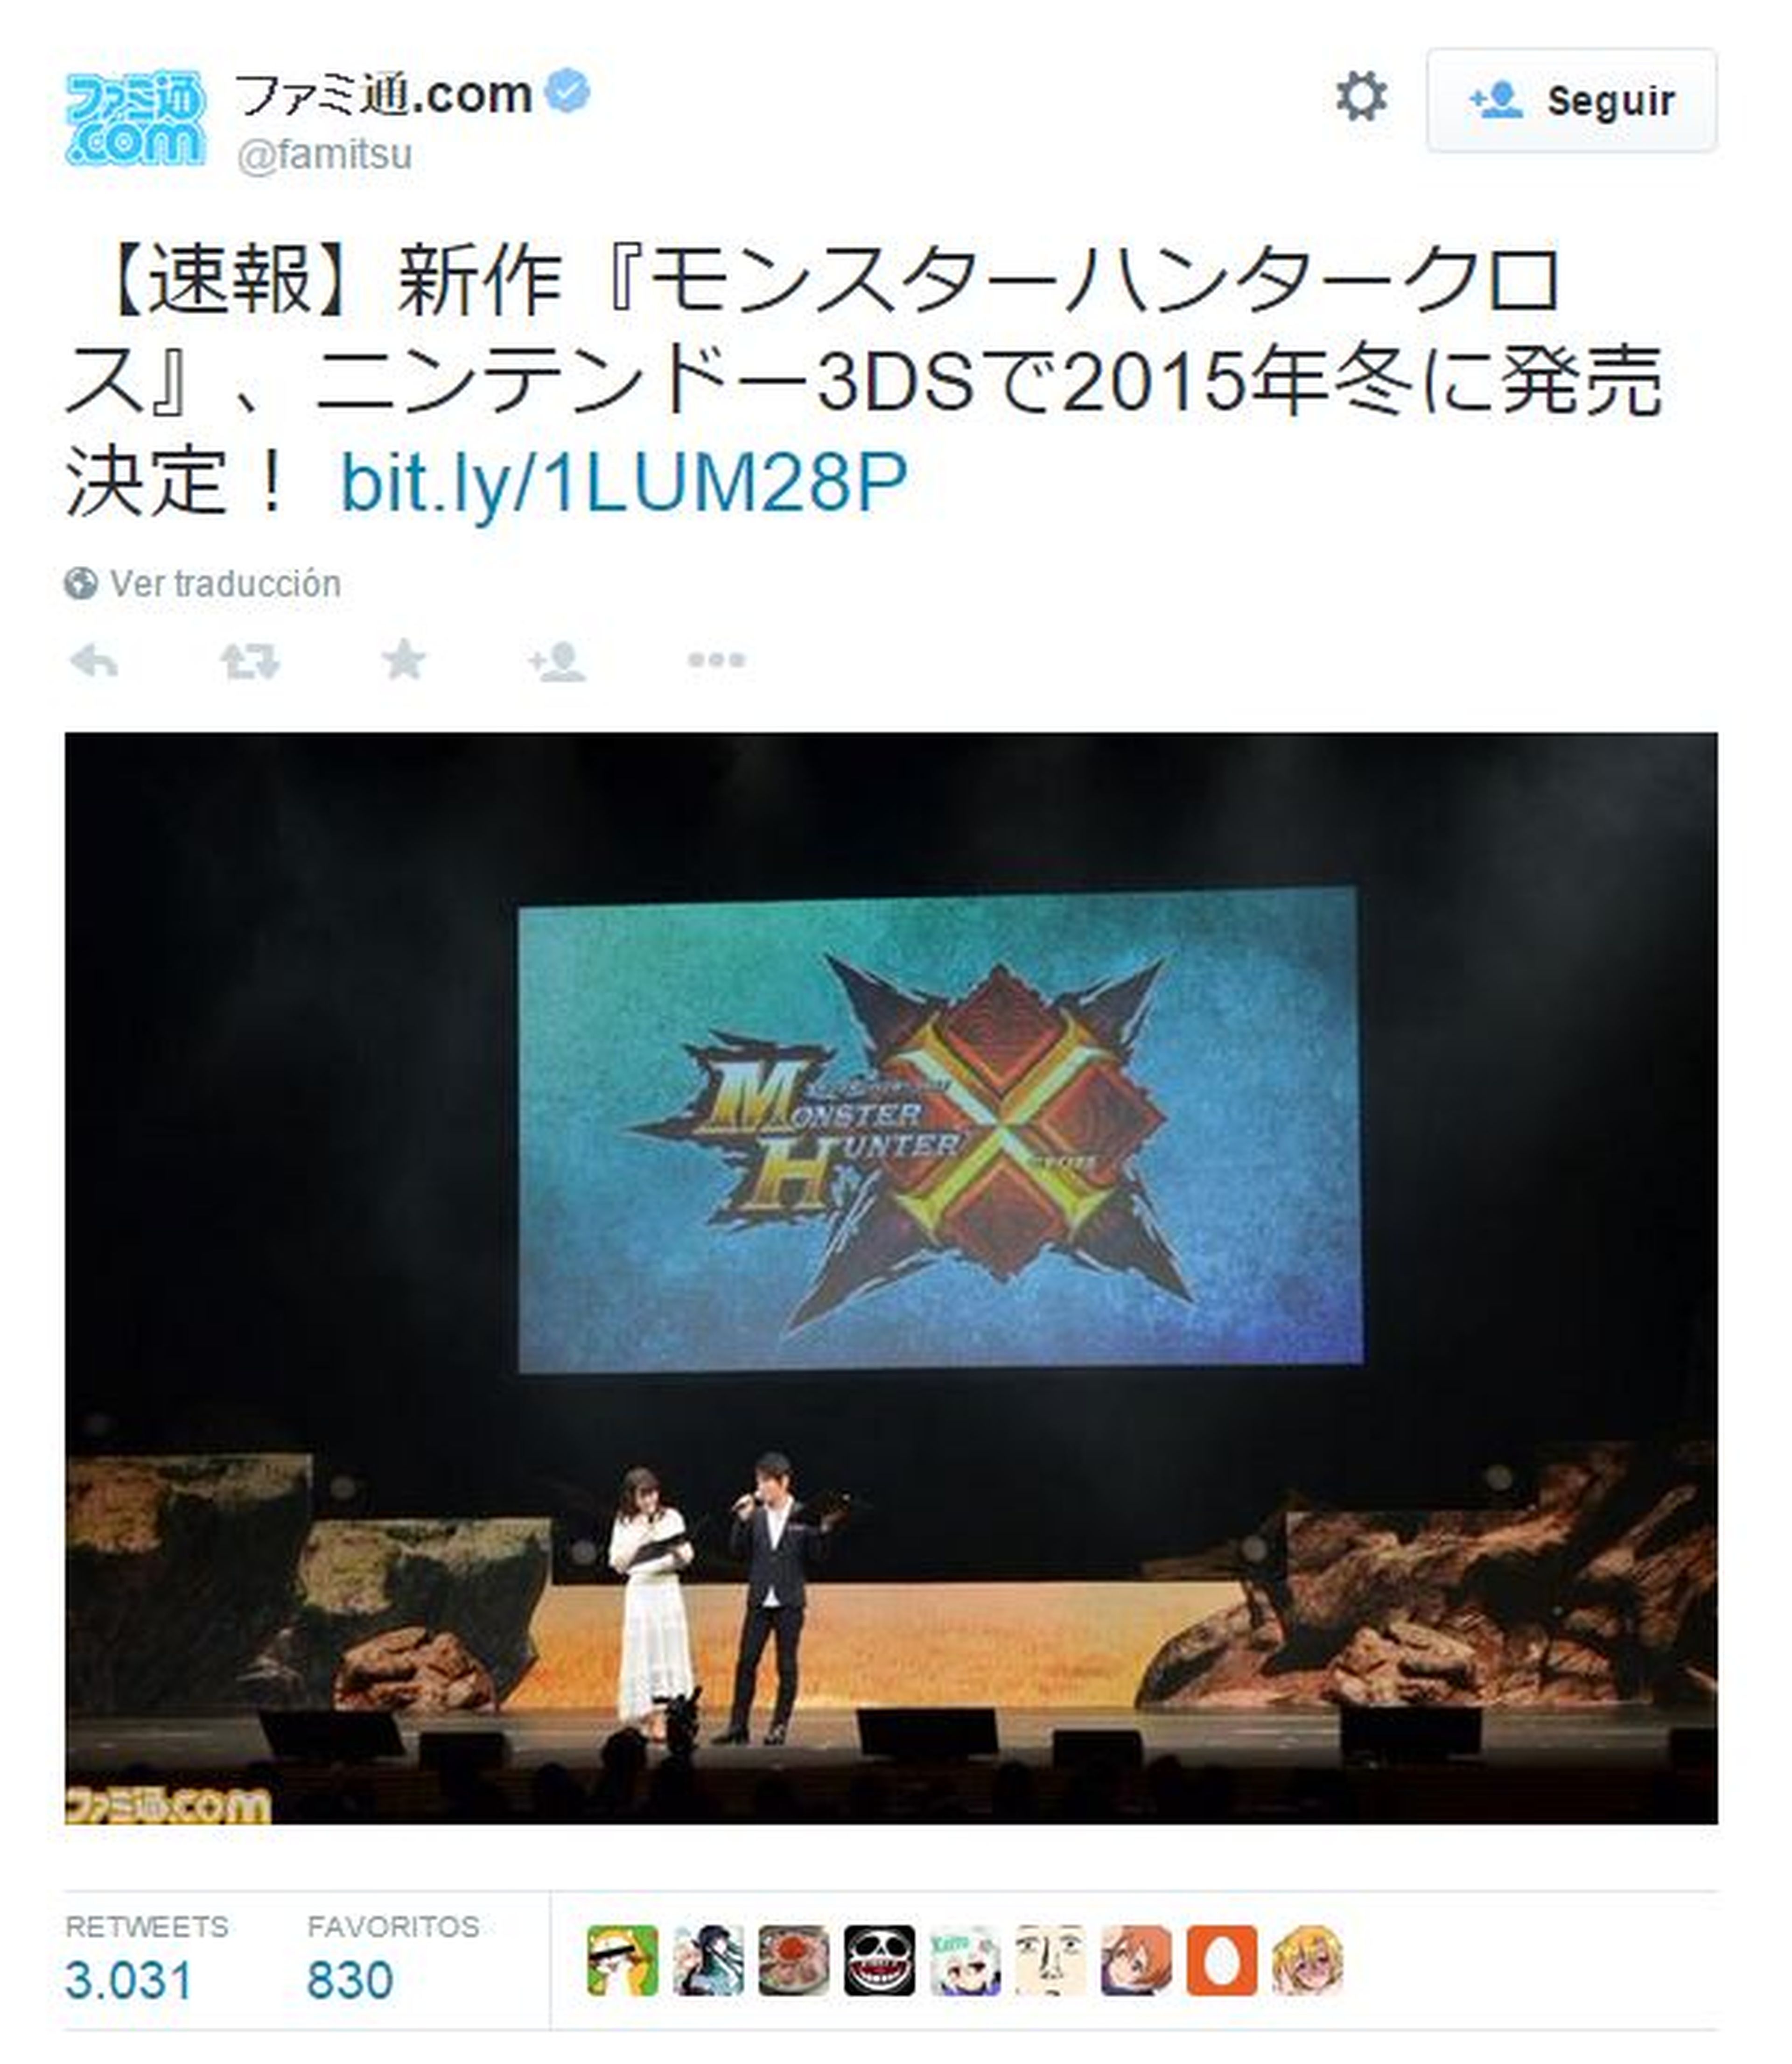 Monster Hunter X anunciado para Nintendo 3DS, este es su tráiler